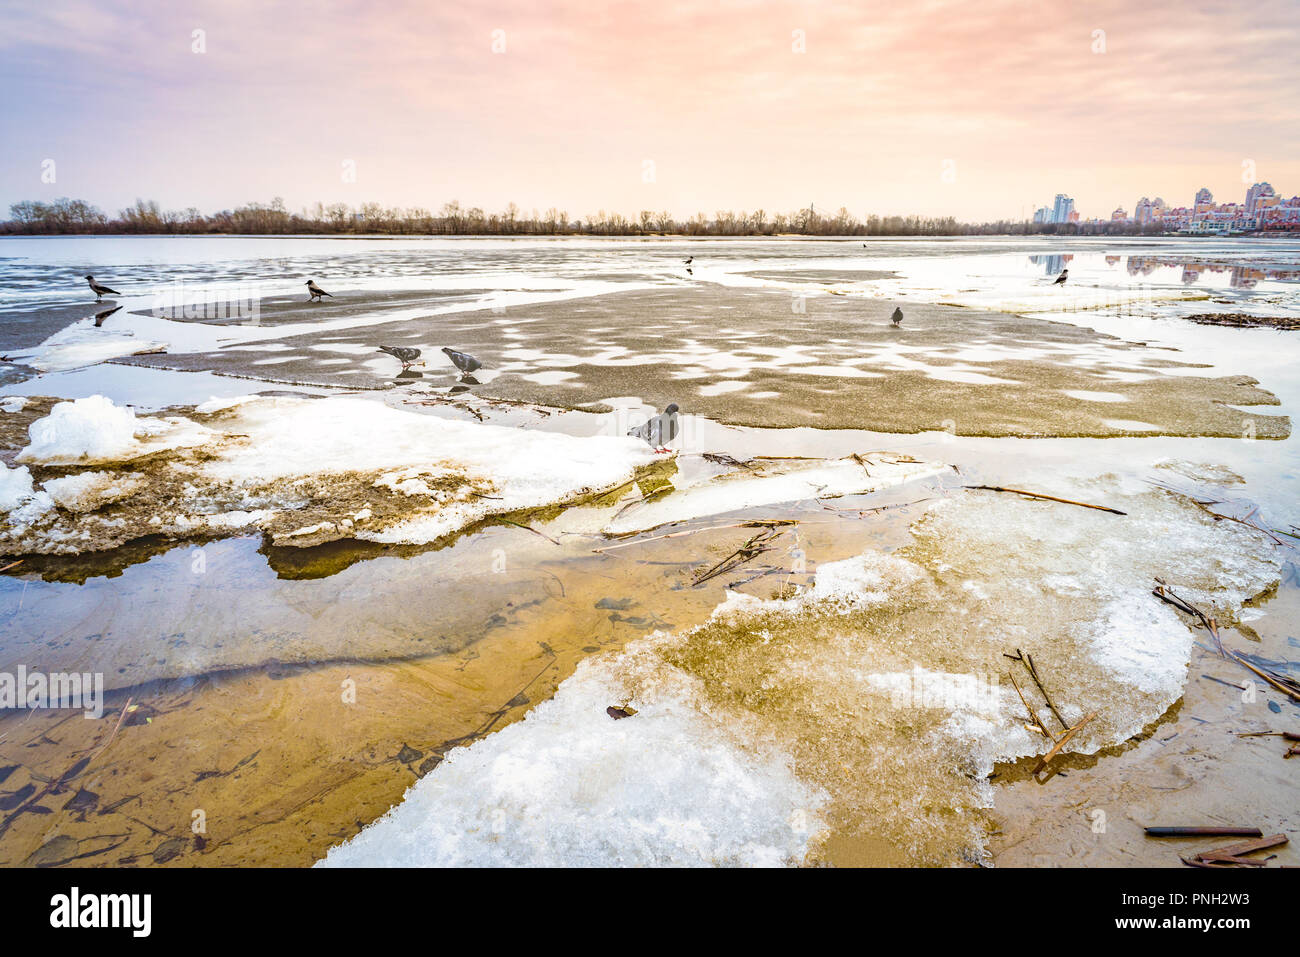 Blöcke von Eis auf dem gefrorenen Fluss Dnepr in Kiew bei einem kalten Winter. Tauben und Krähen sind auf der Suche nach Essen. Die obolon Skyline erscheint in der Dist Stockfoto